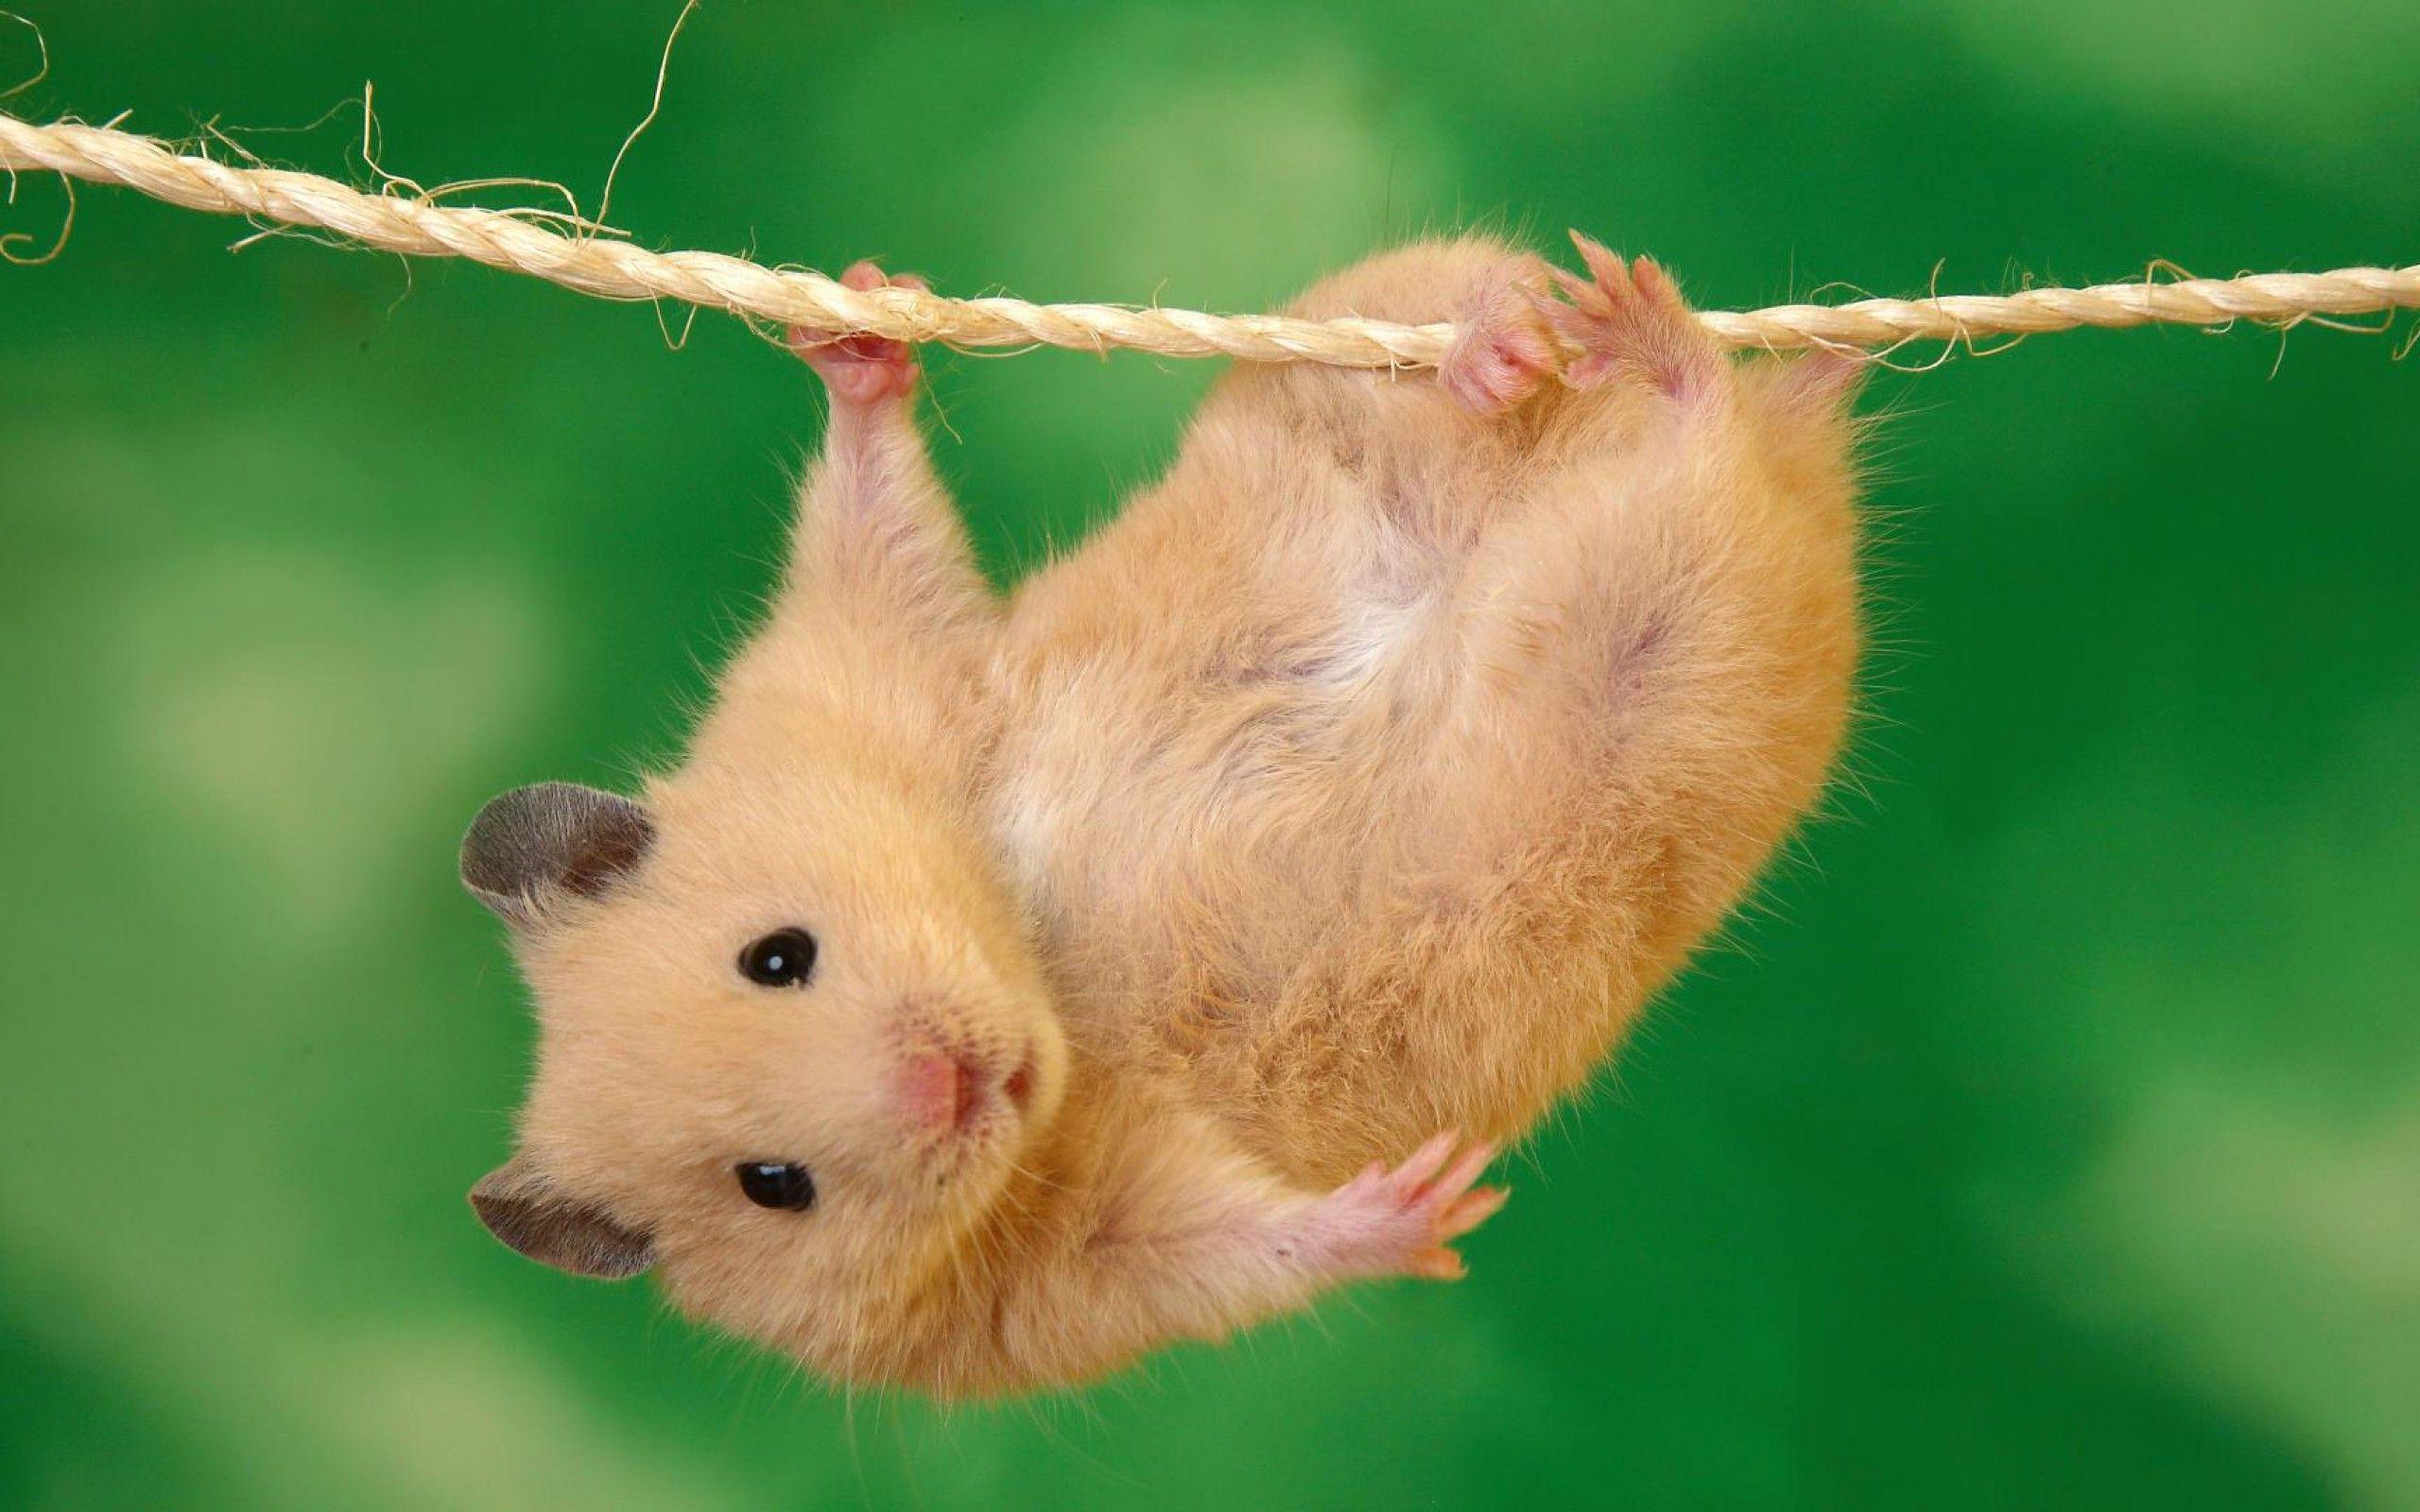 Hamster On Net Image Wallpaper